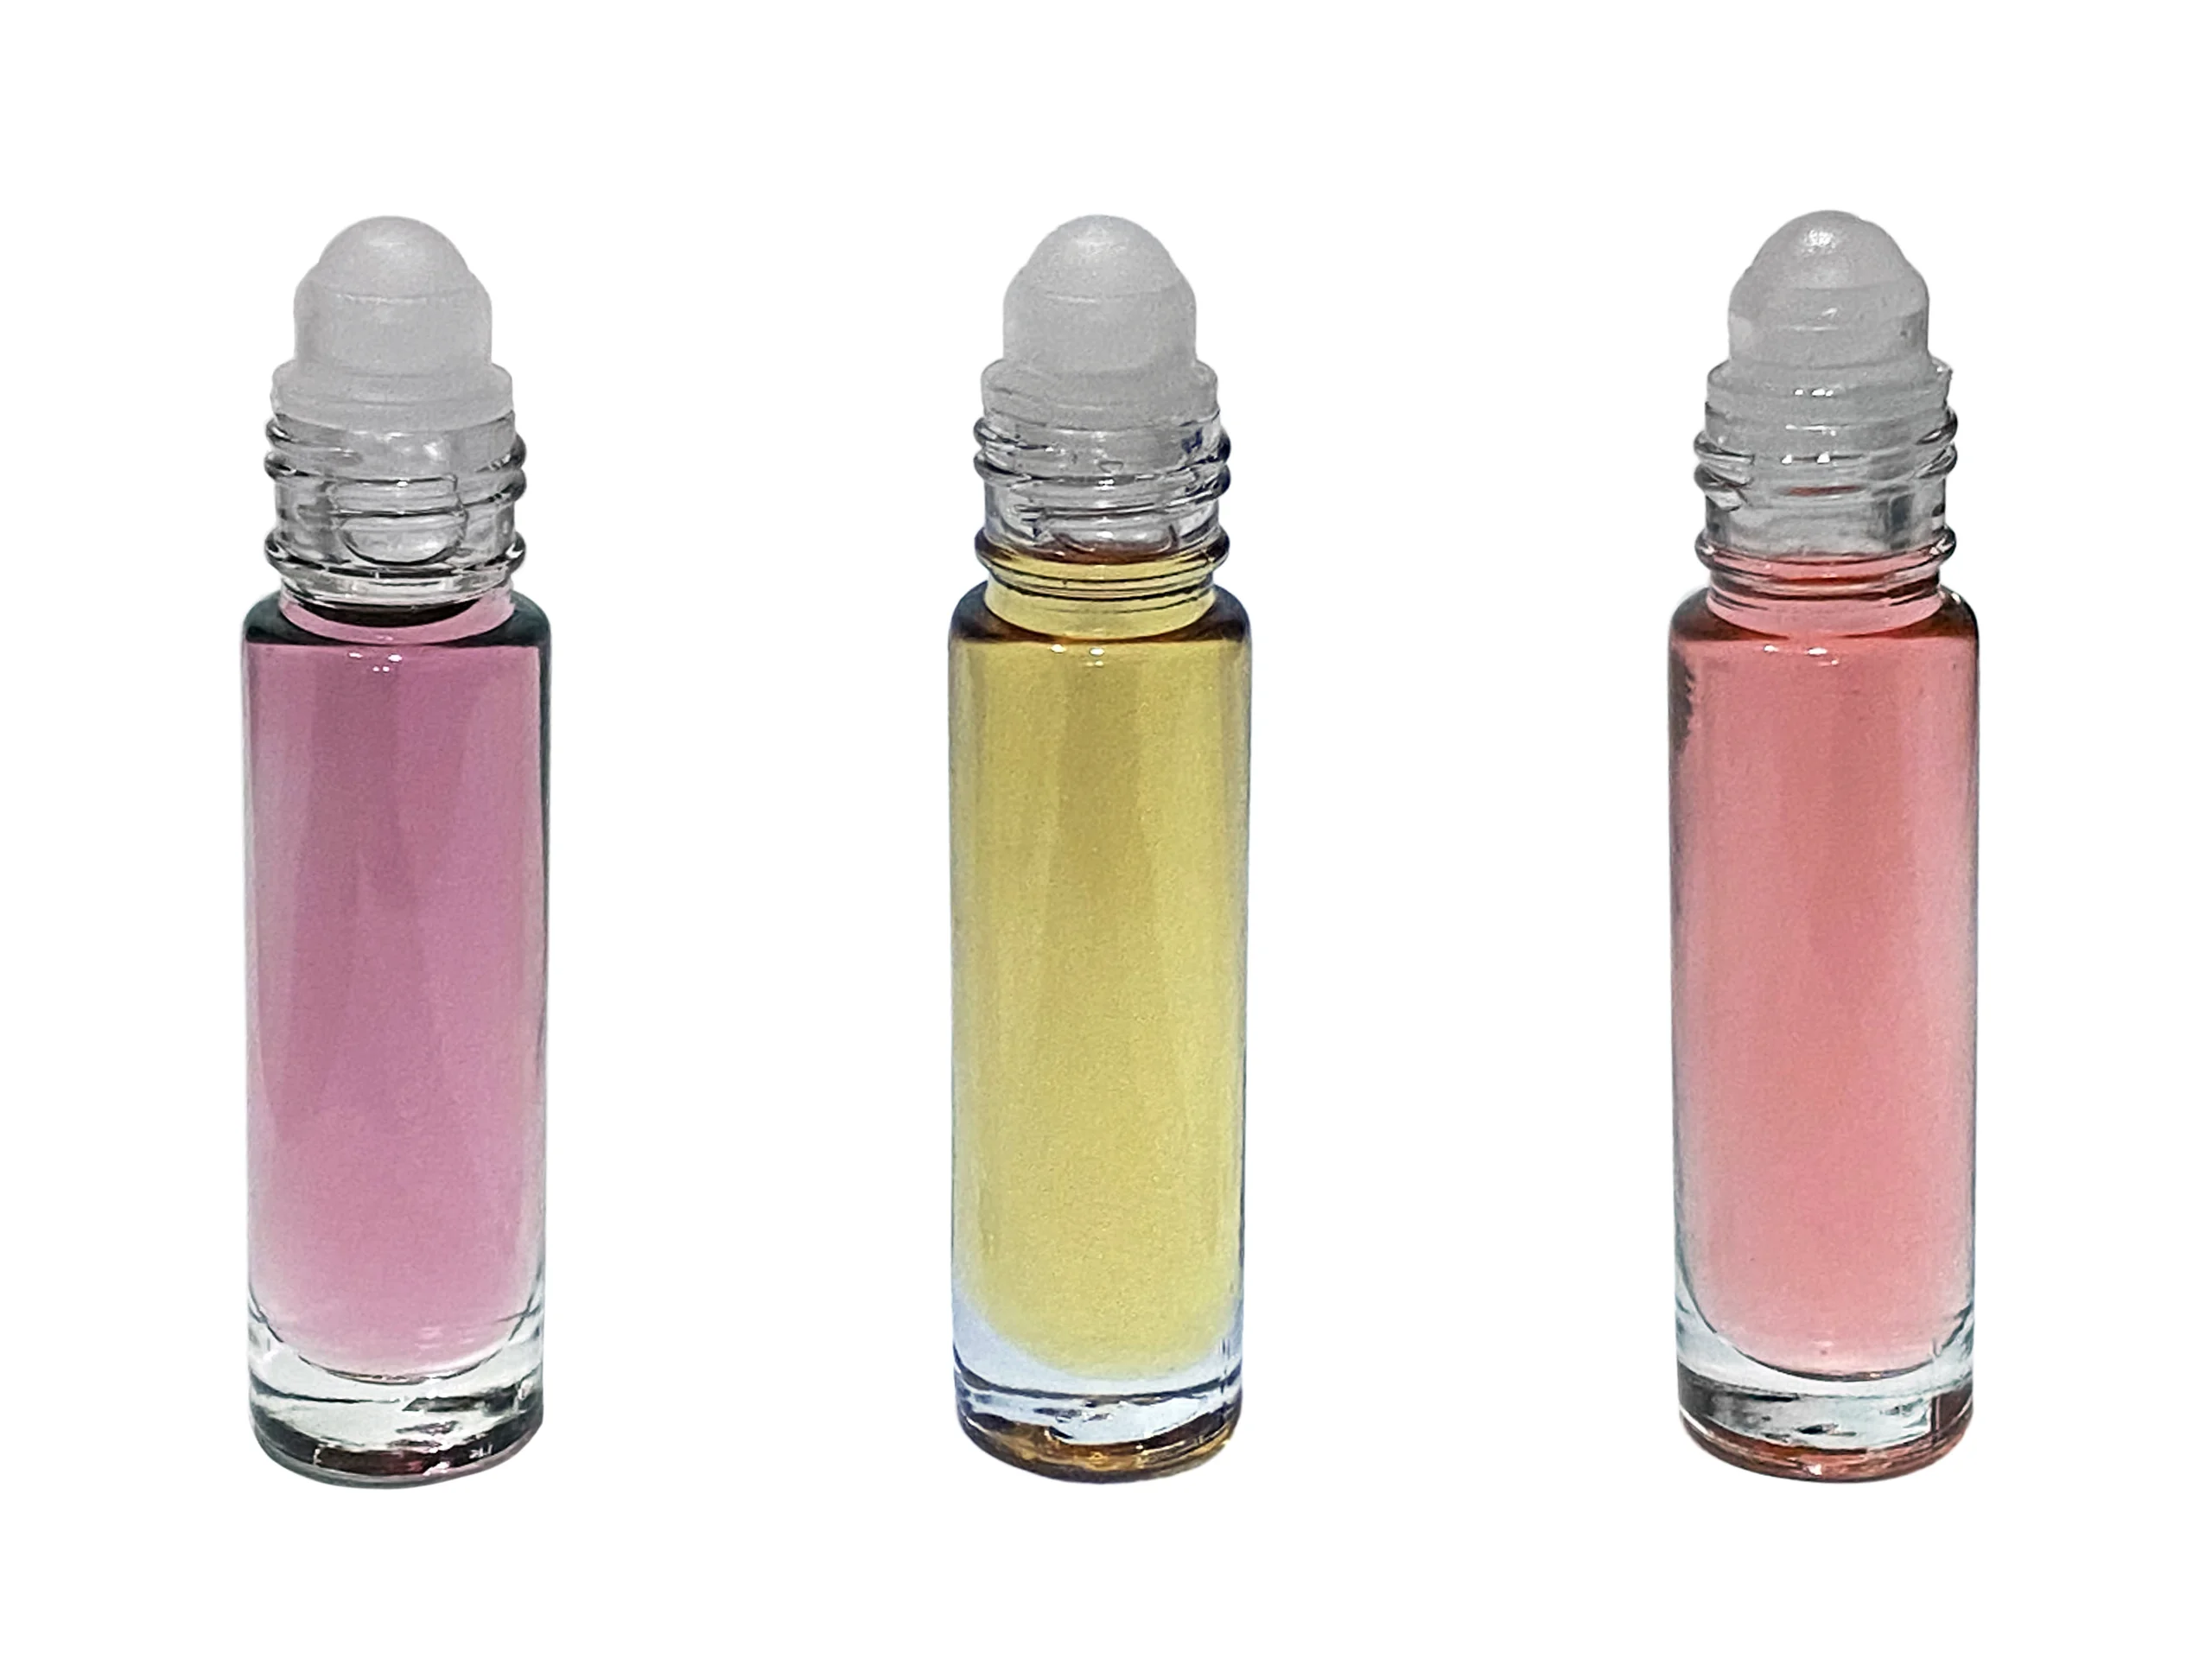 Designer Inspired Perfume Body Oils